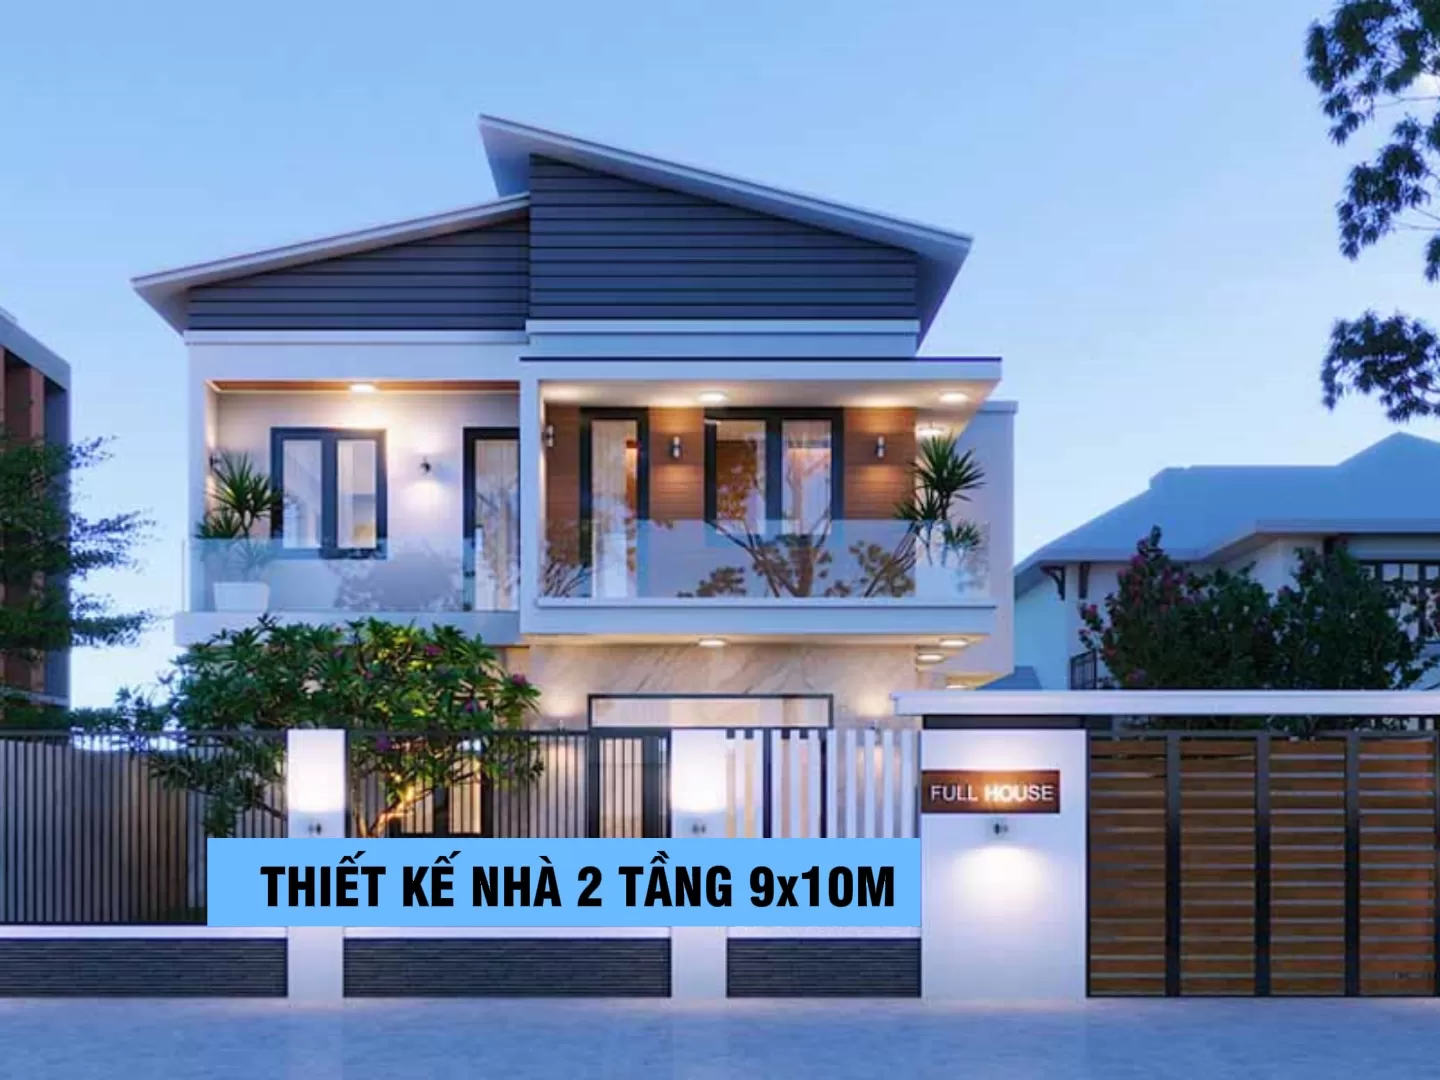 Mẫu thiết kế nhà 2 tầng đẹp hiện đại tại Nghệ An - anh Tâm